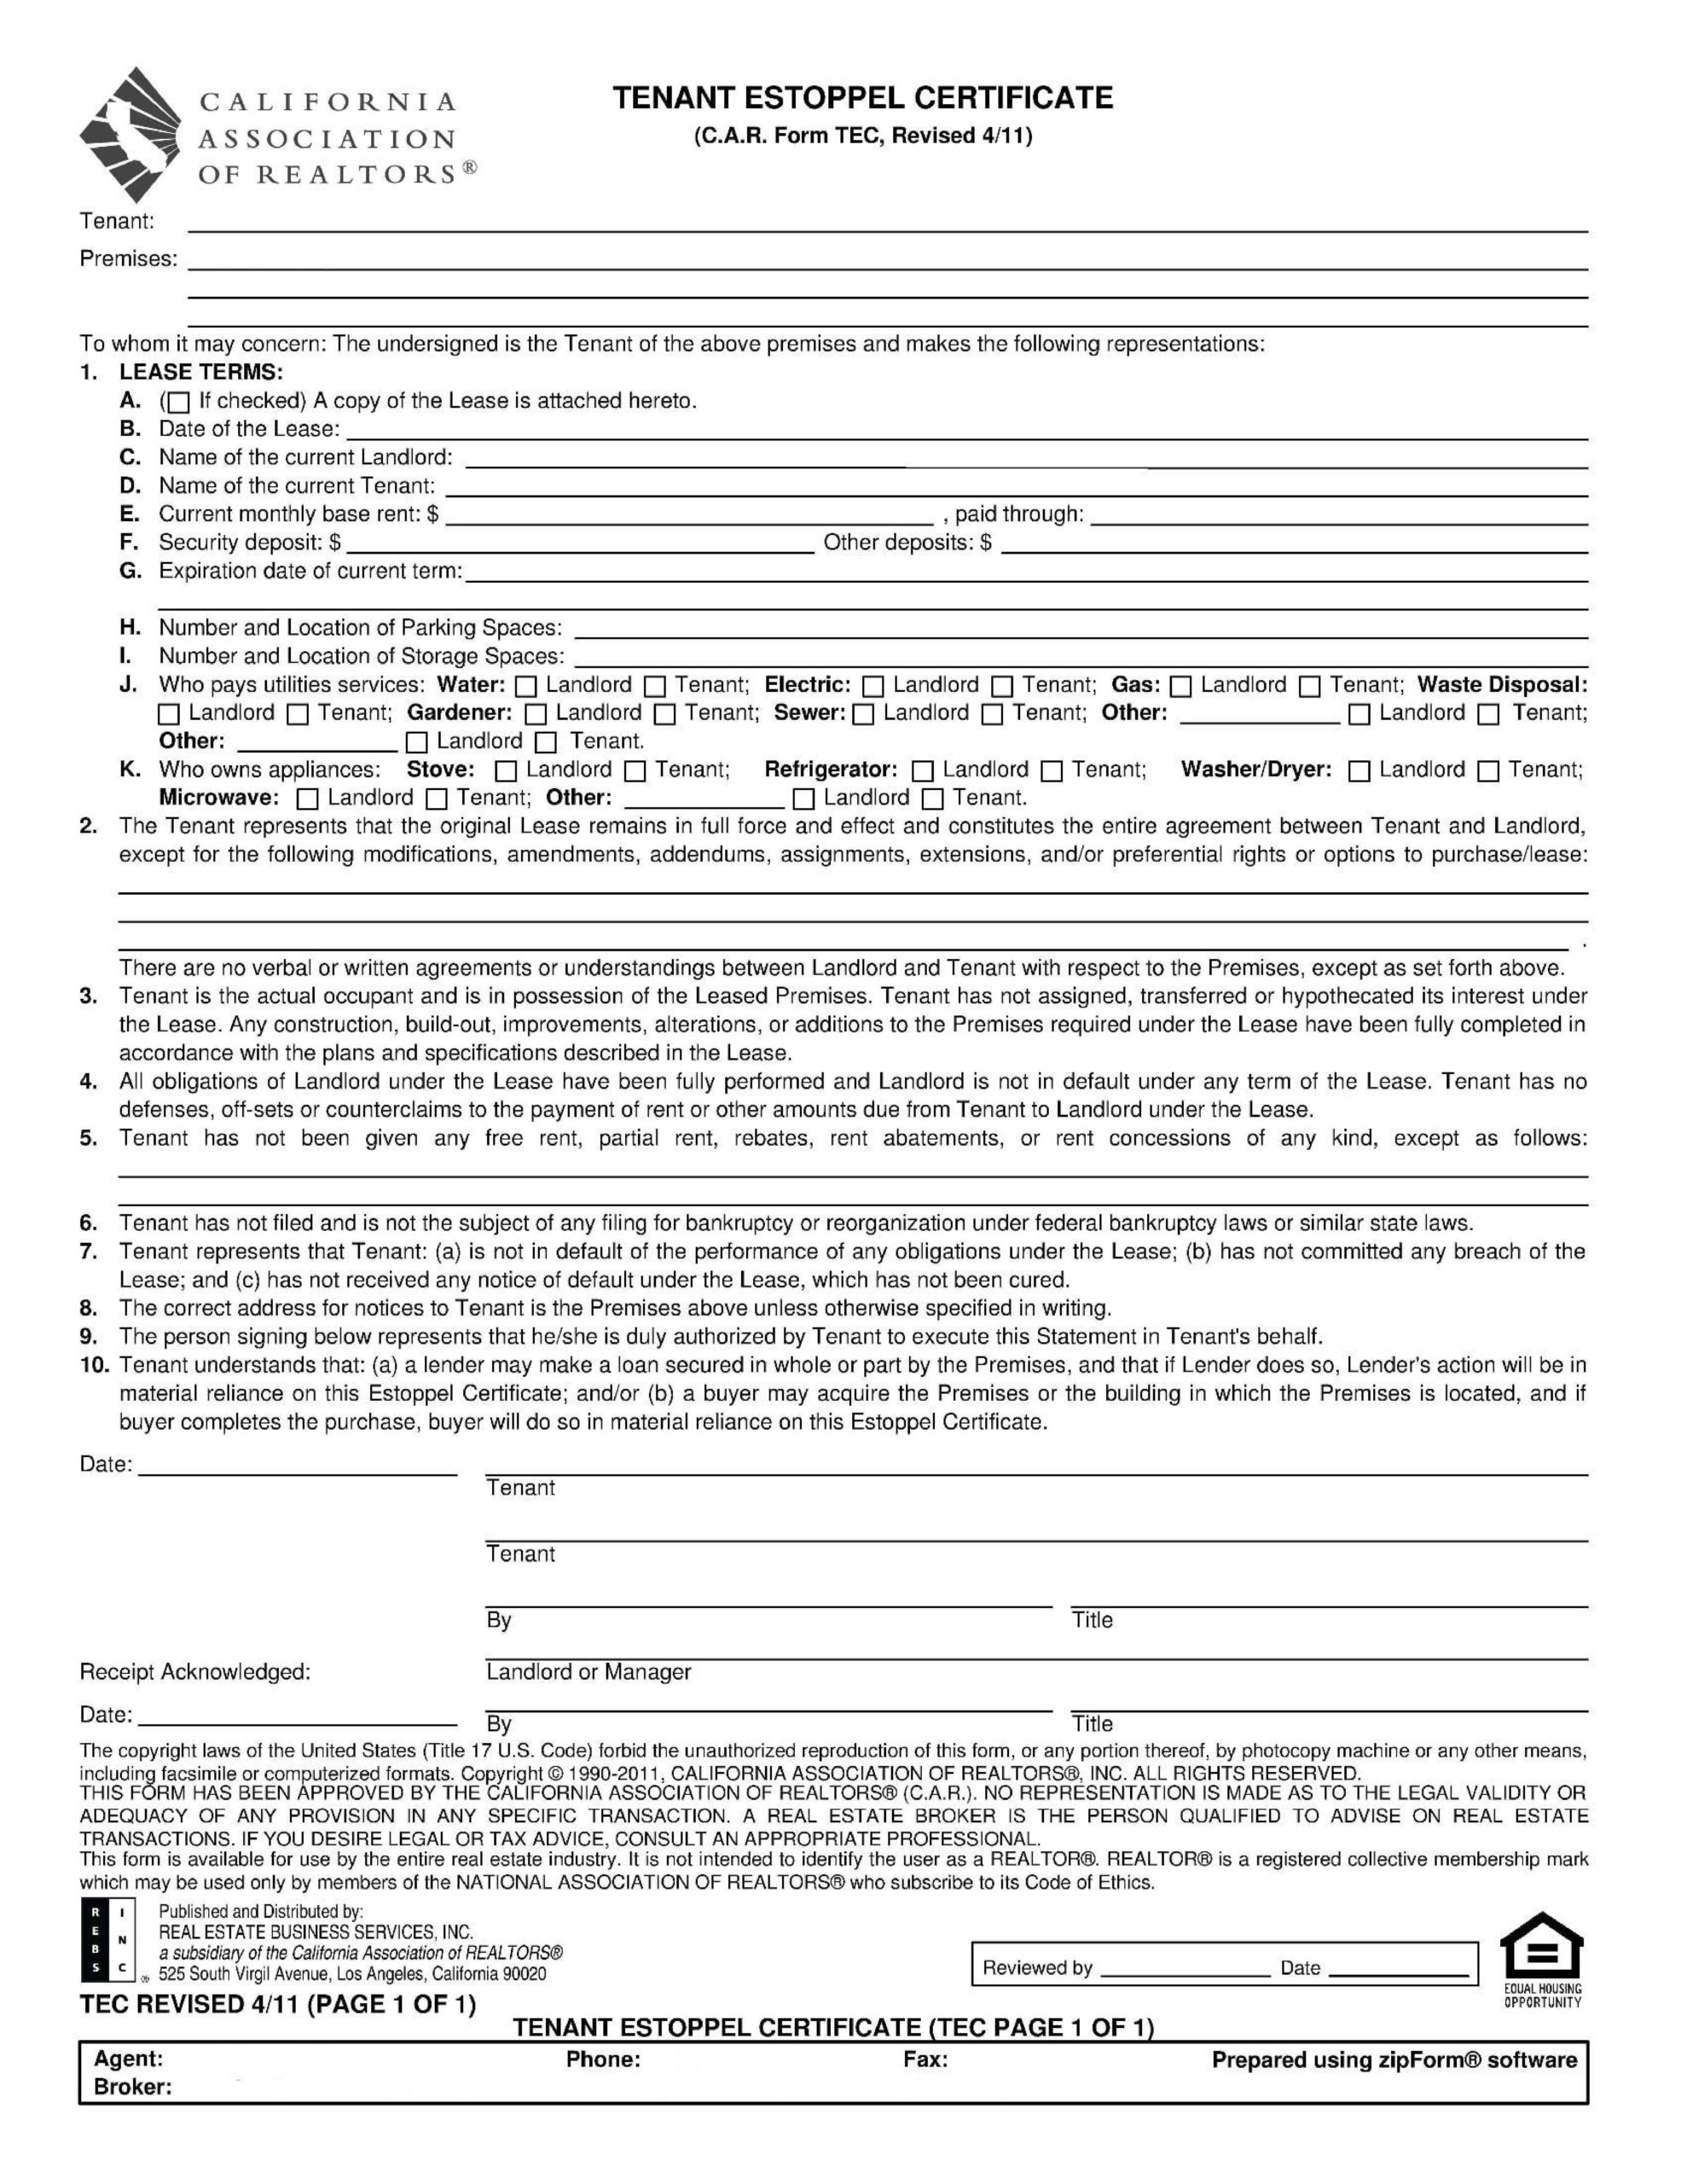 Free estoppel certificate form 06